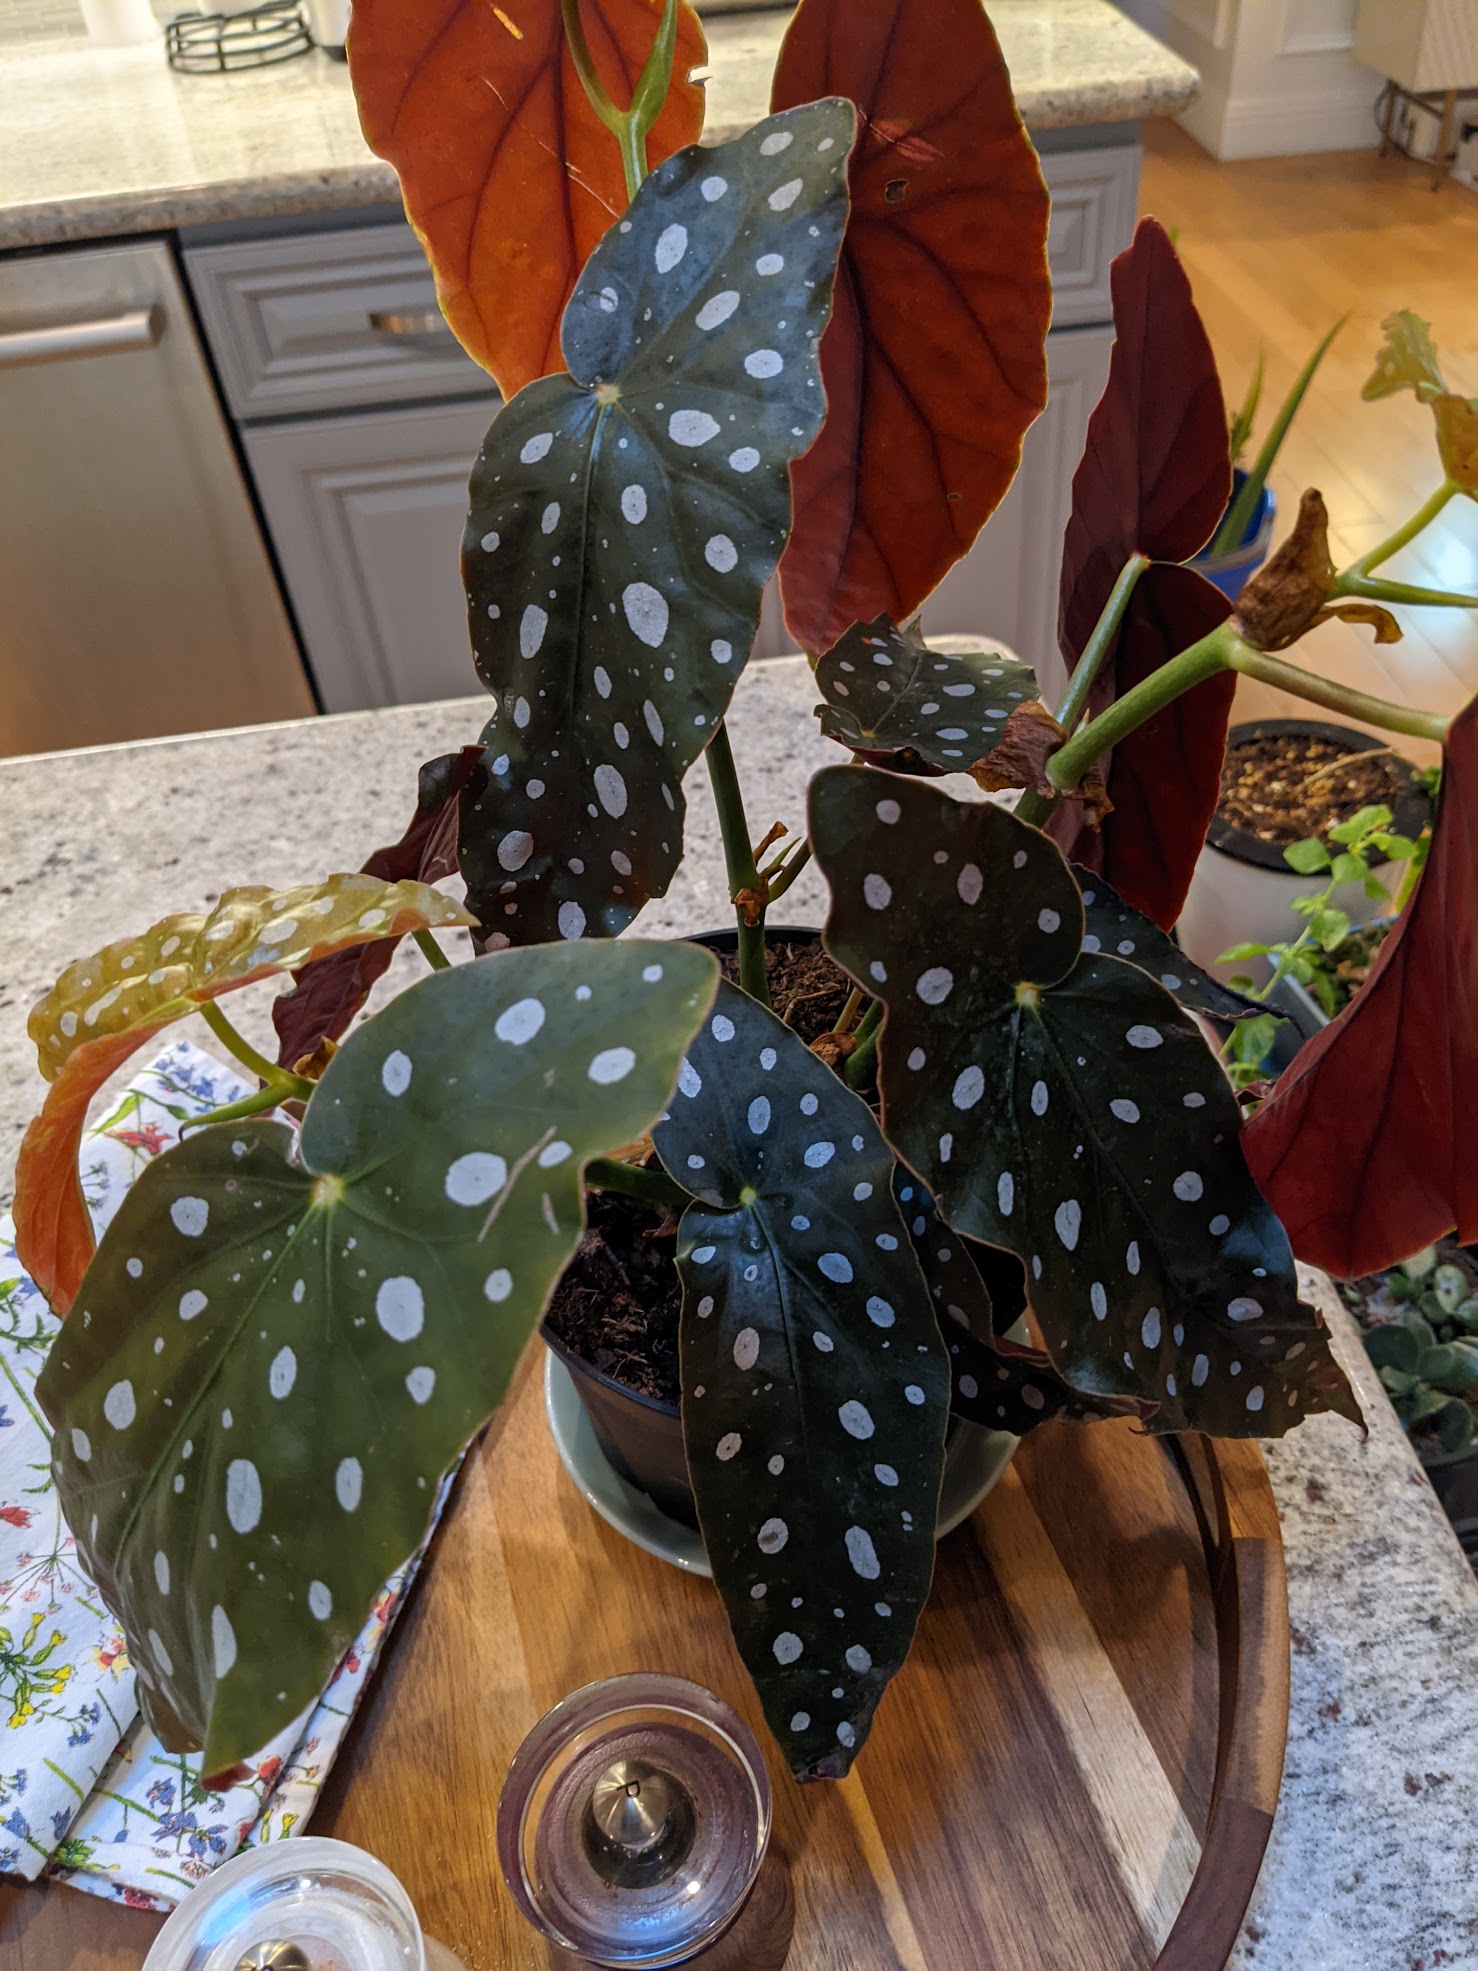 A polkadot begonia I acquired